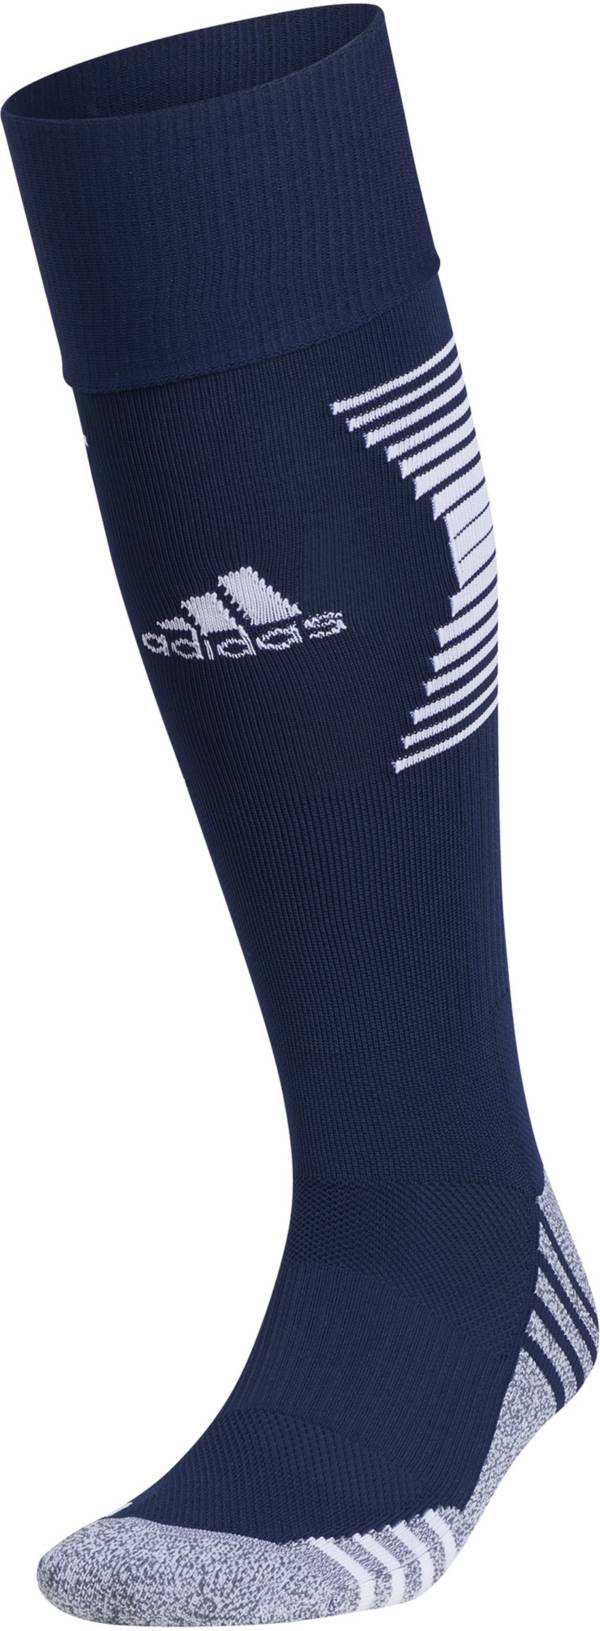 adidas Team Speed 3 Soccer OTC Socks product image